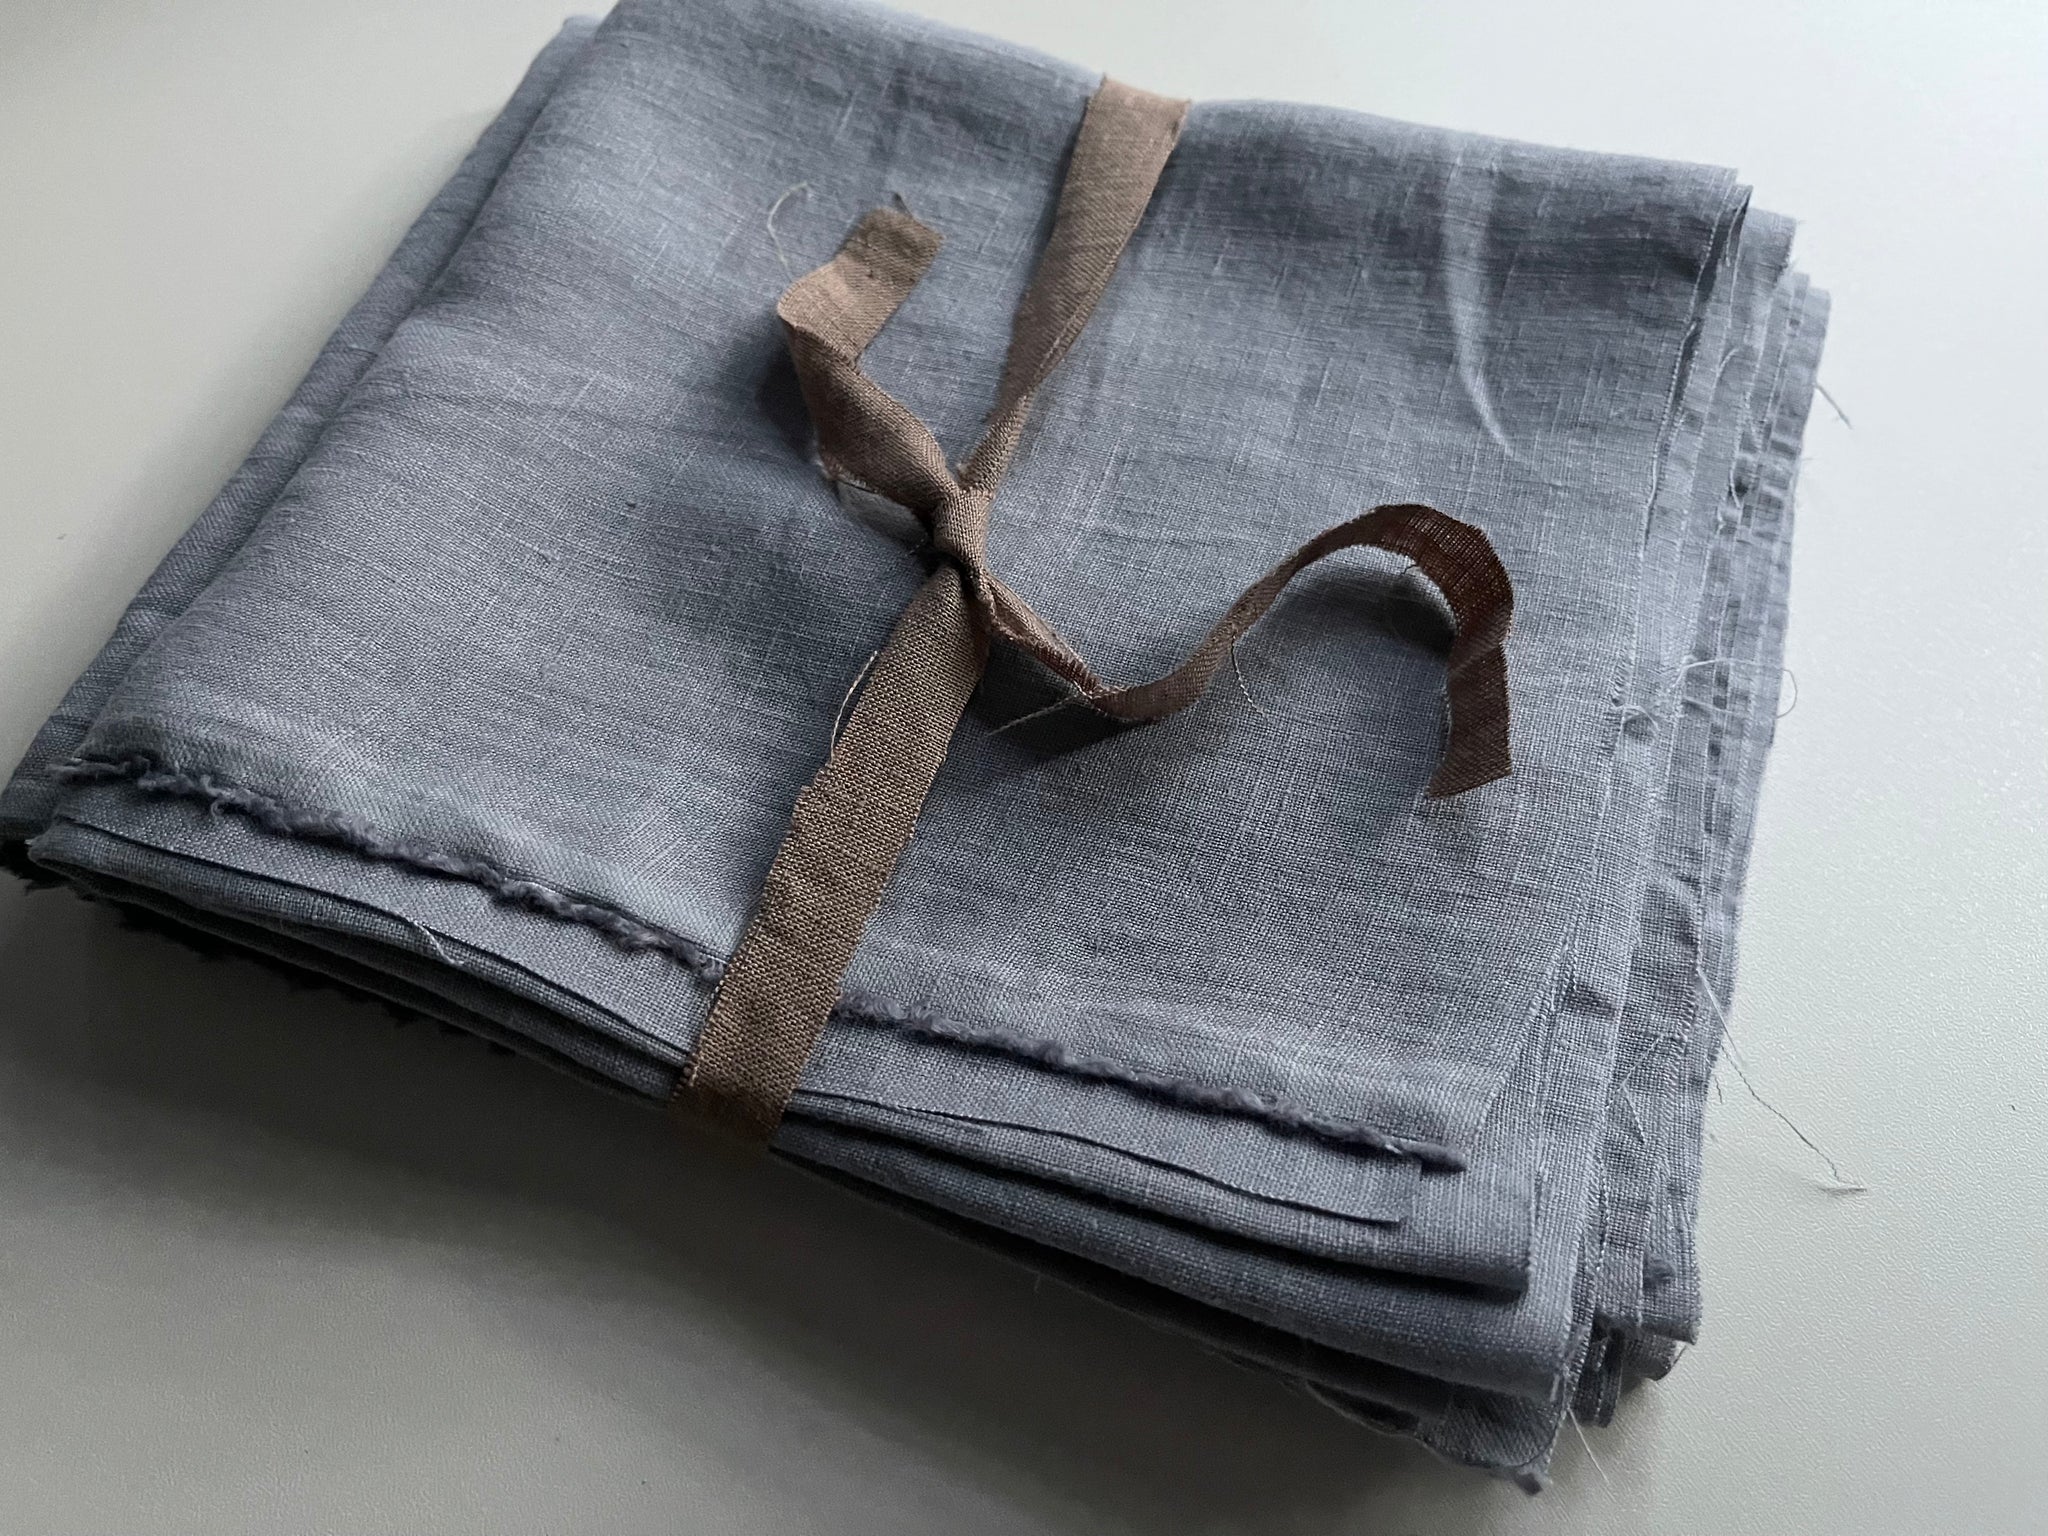 Linen Fabric Remnants - Bluish Grey